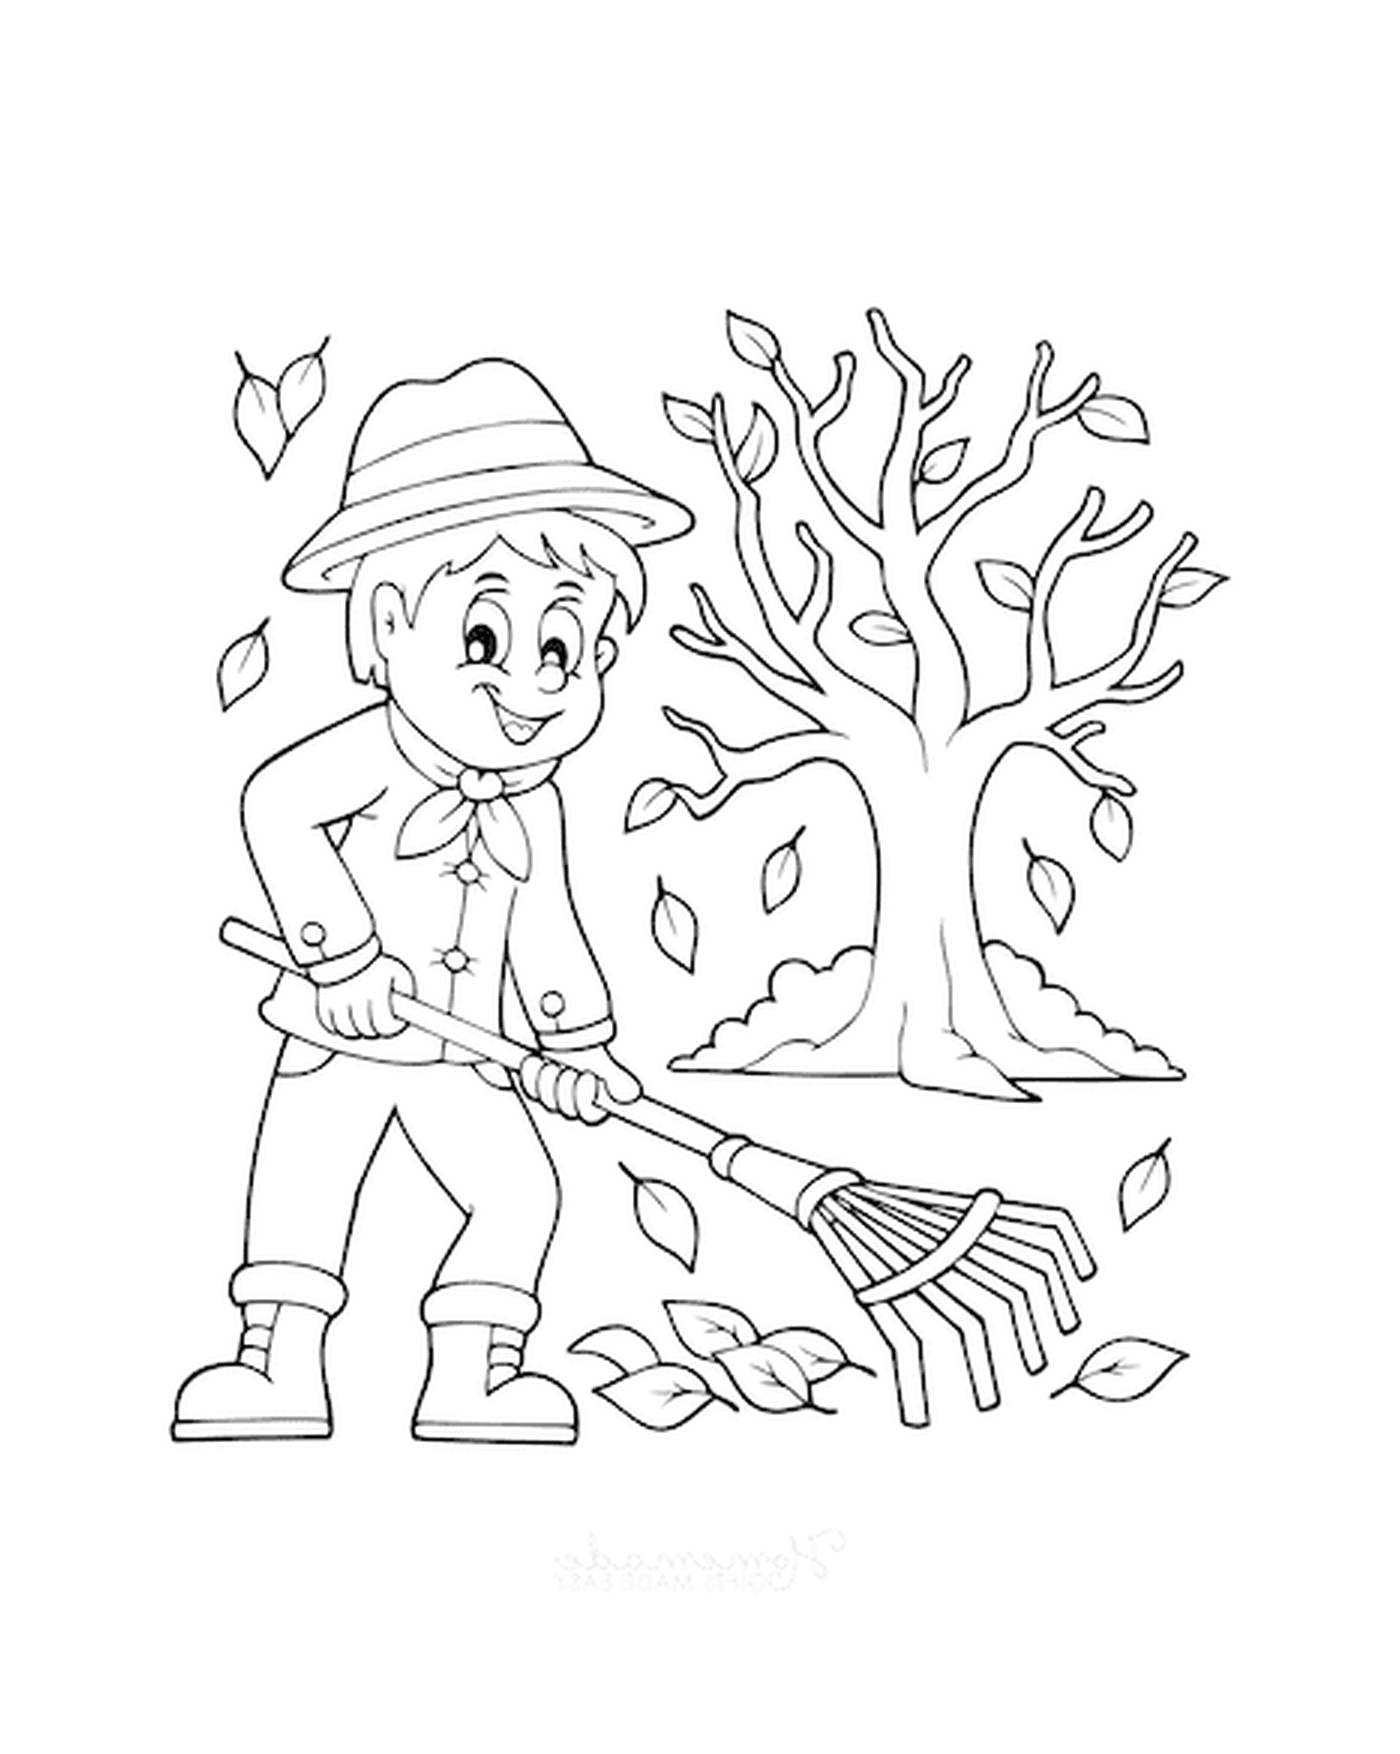  Un chico revoloteando las hojas delante de un árbol 